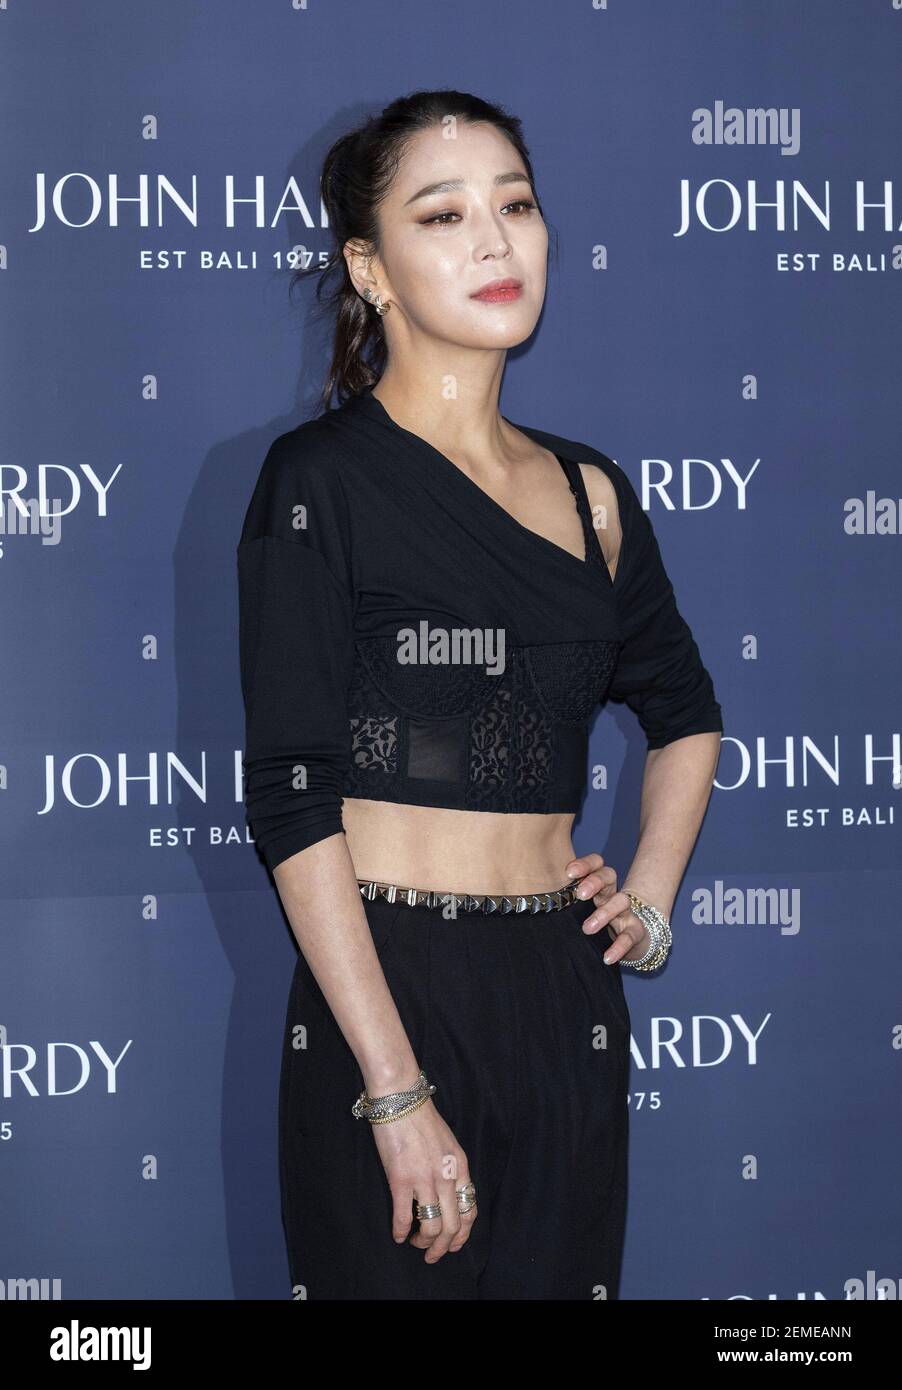 Febrero 2019 - Seúl, Corea del Sur : la actriz surcoreana han Go-eun, asiste a la llamada fotográfica para la Marca de de joyería 'John Hardy' que se en